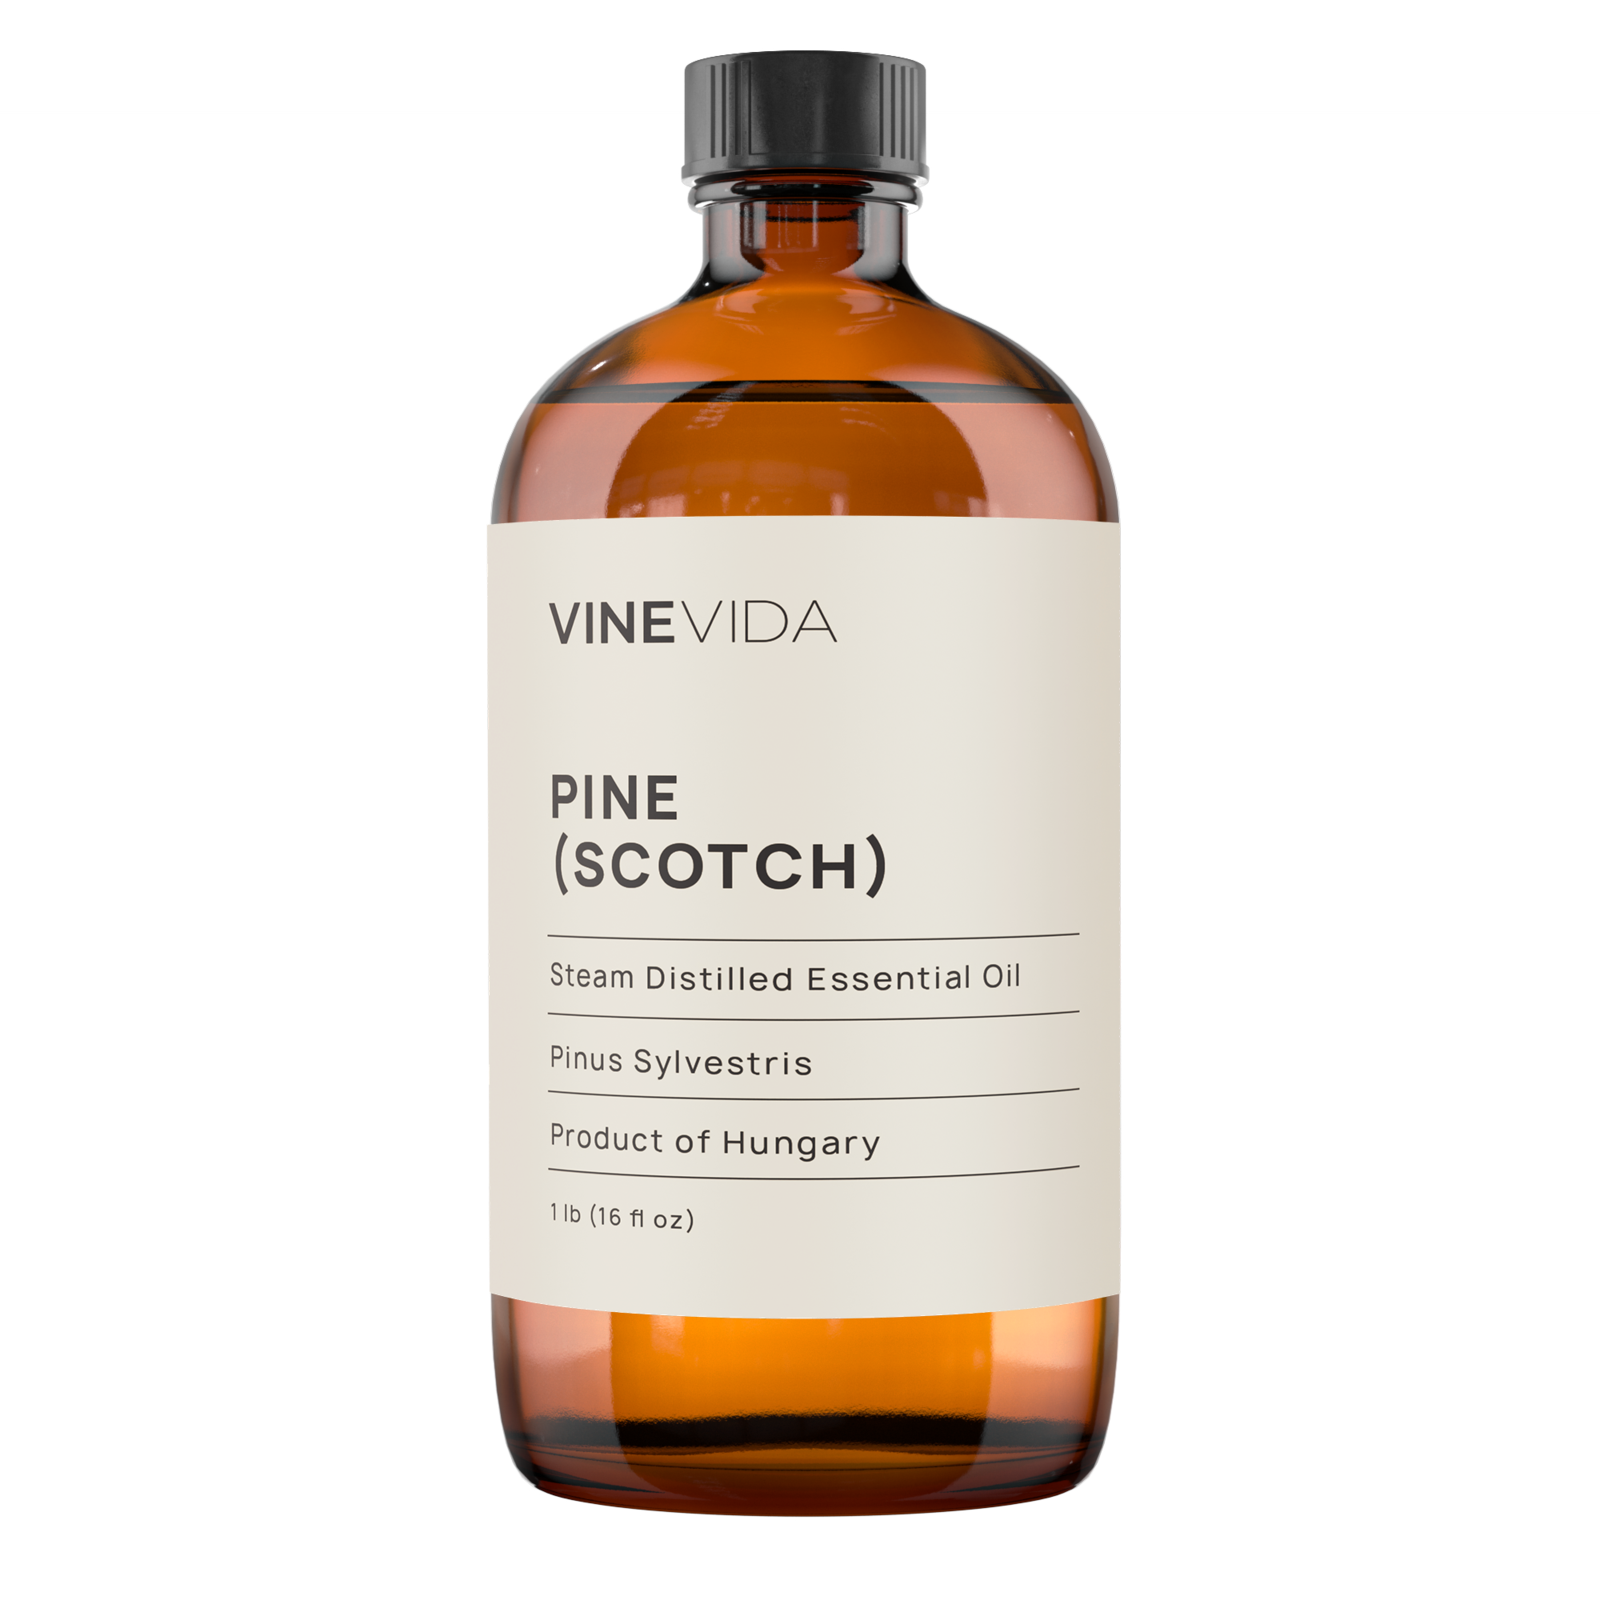 Scotch Pine Essential Oil